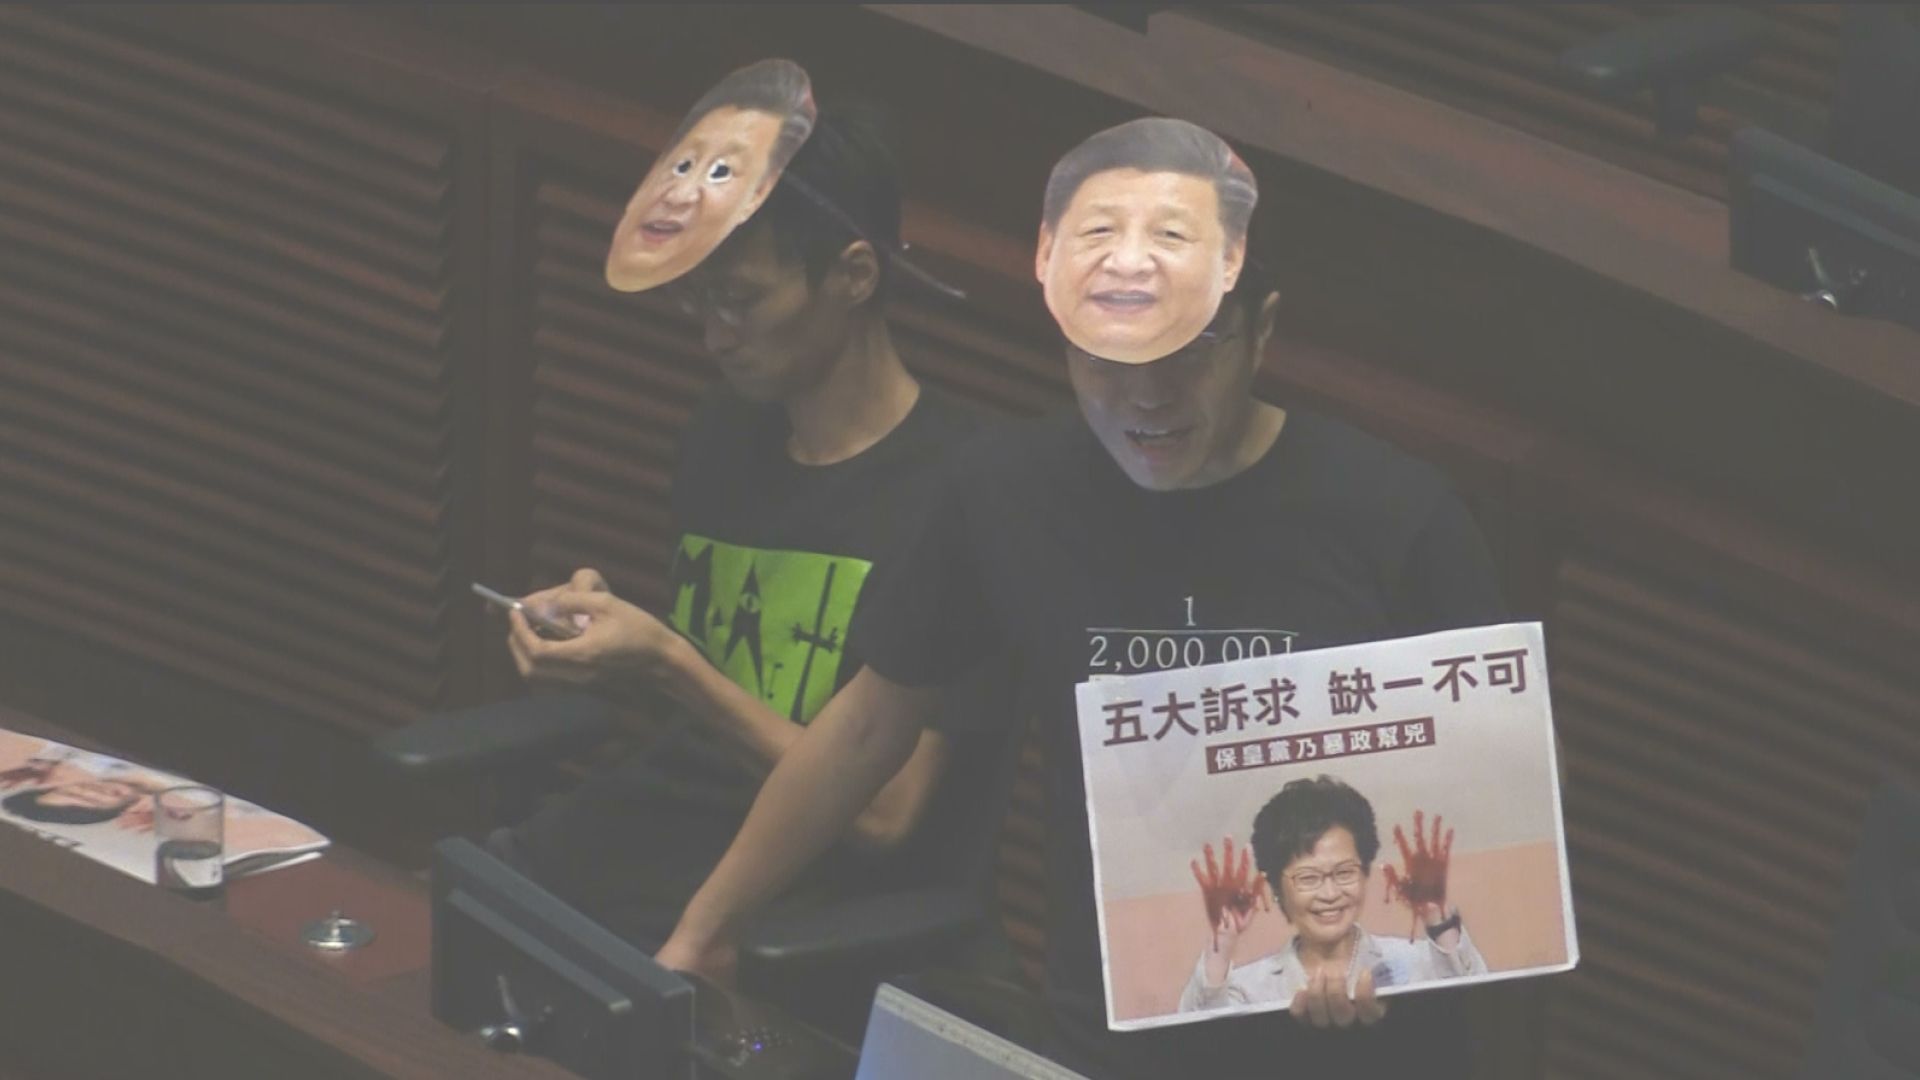 香港デモの現場から 自由を求める戦い が生む不寛容と恐怖 11月は対立解消のヤマ場になるか 特集 報道ランナー ニュース 関西テレビ放送 カンテレ